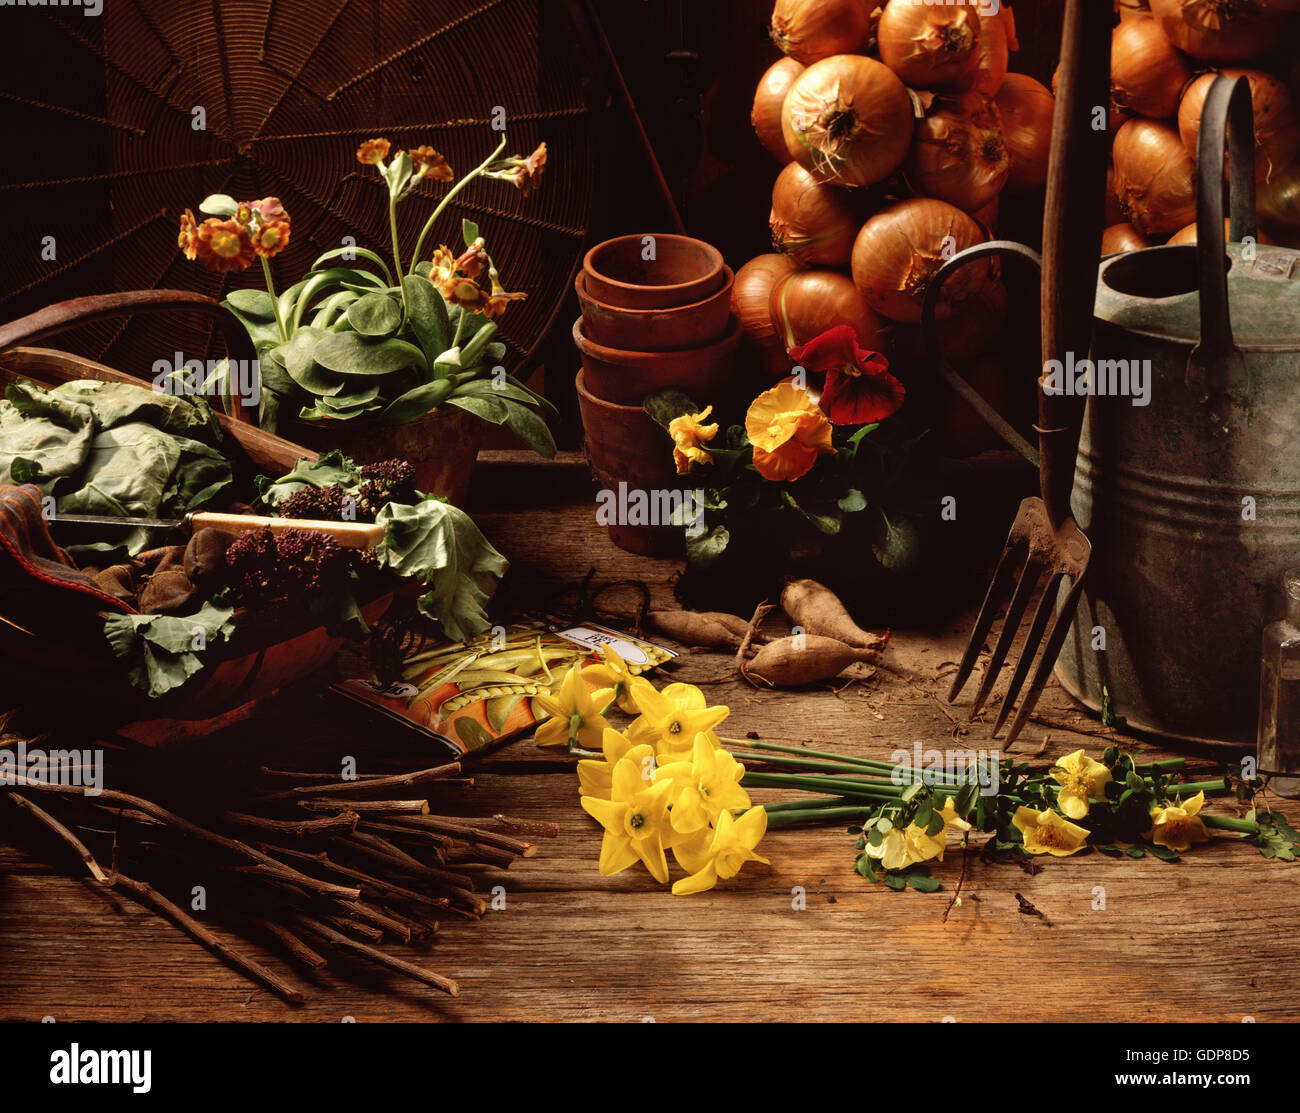 Gerätehaus Szene, frisch gepflückten Blumen und Gemüse mit Gartengeräten und Blumen Töpfe Stockfoto